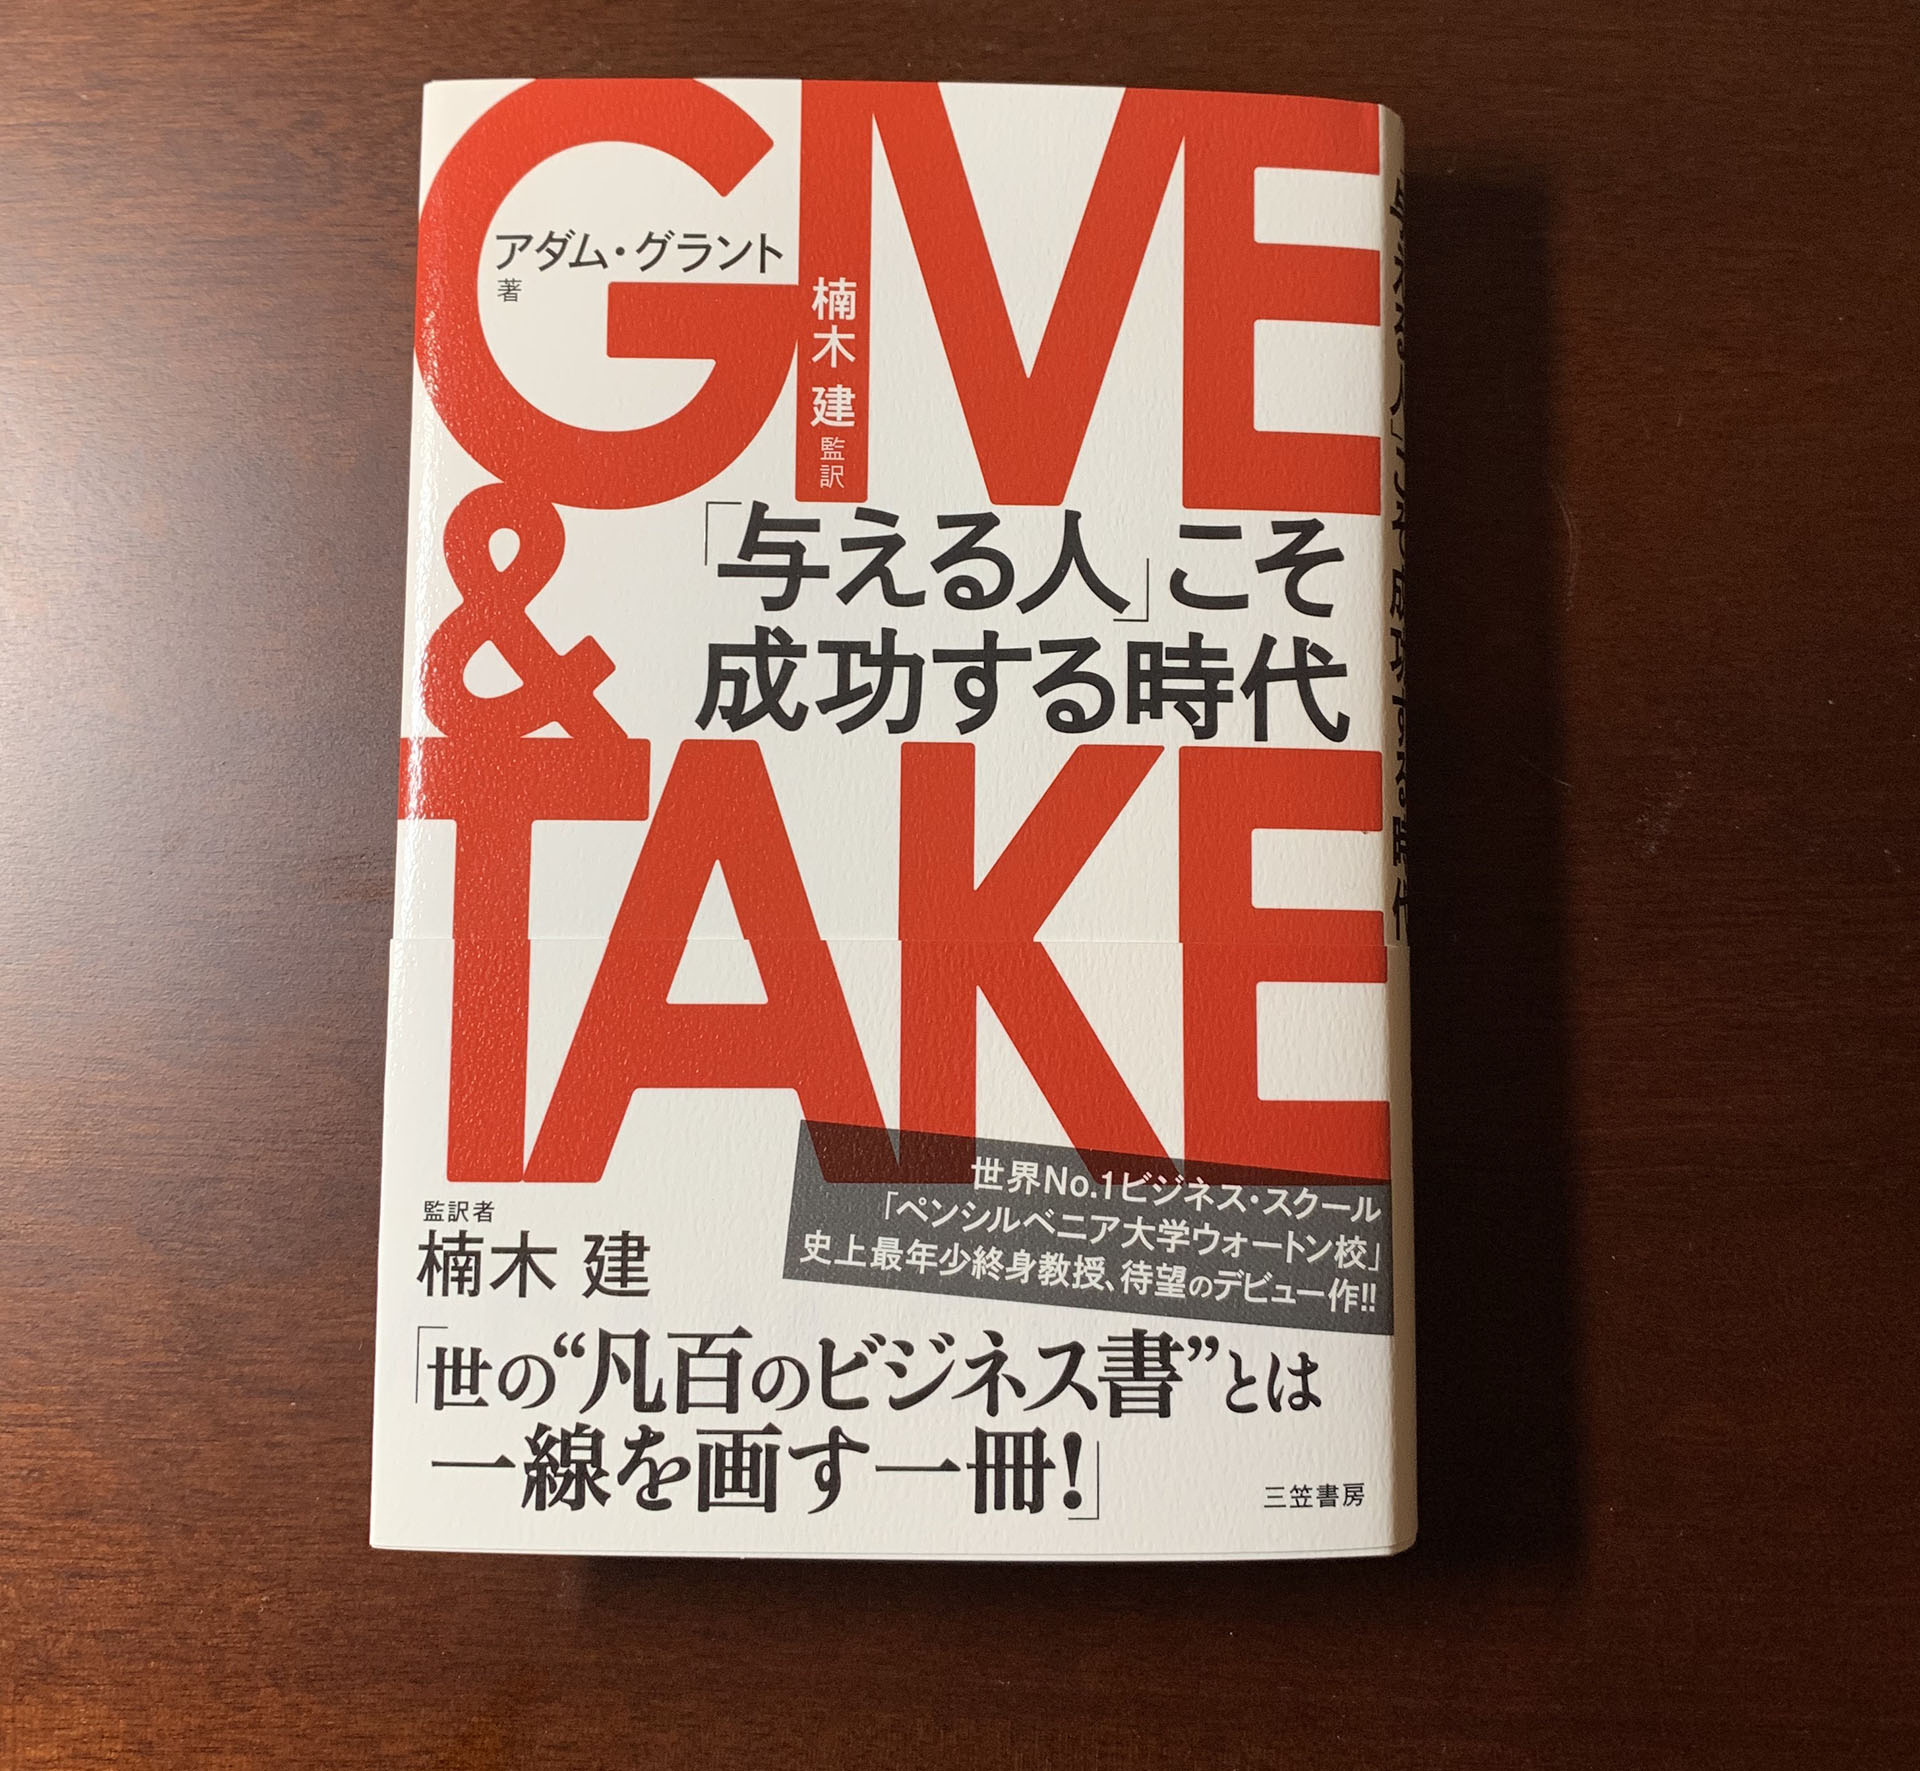 【書評と考察】GIVE & TAKE 「与える人」こそ成功する時代 ギバーになれば誰もが得をする。生き方の転換をもたらしてくれる画期的な本。